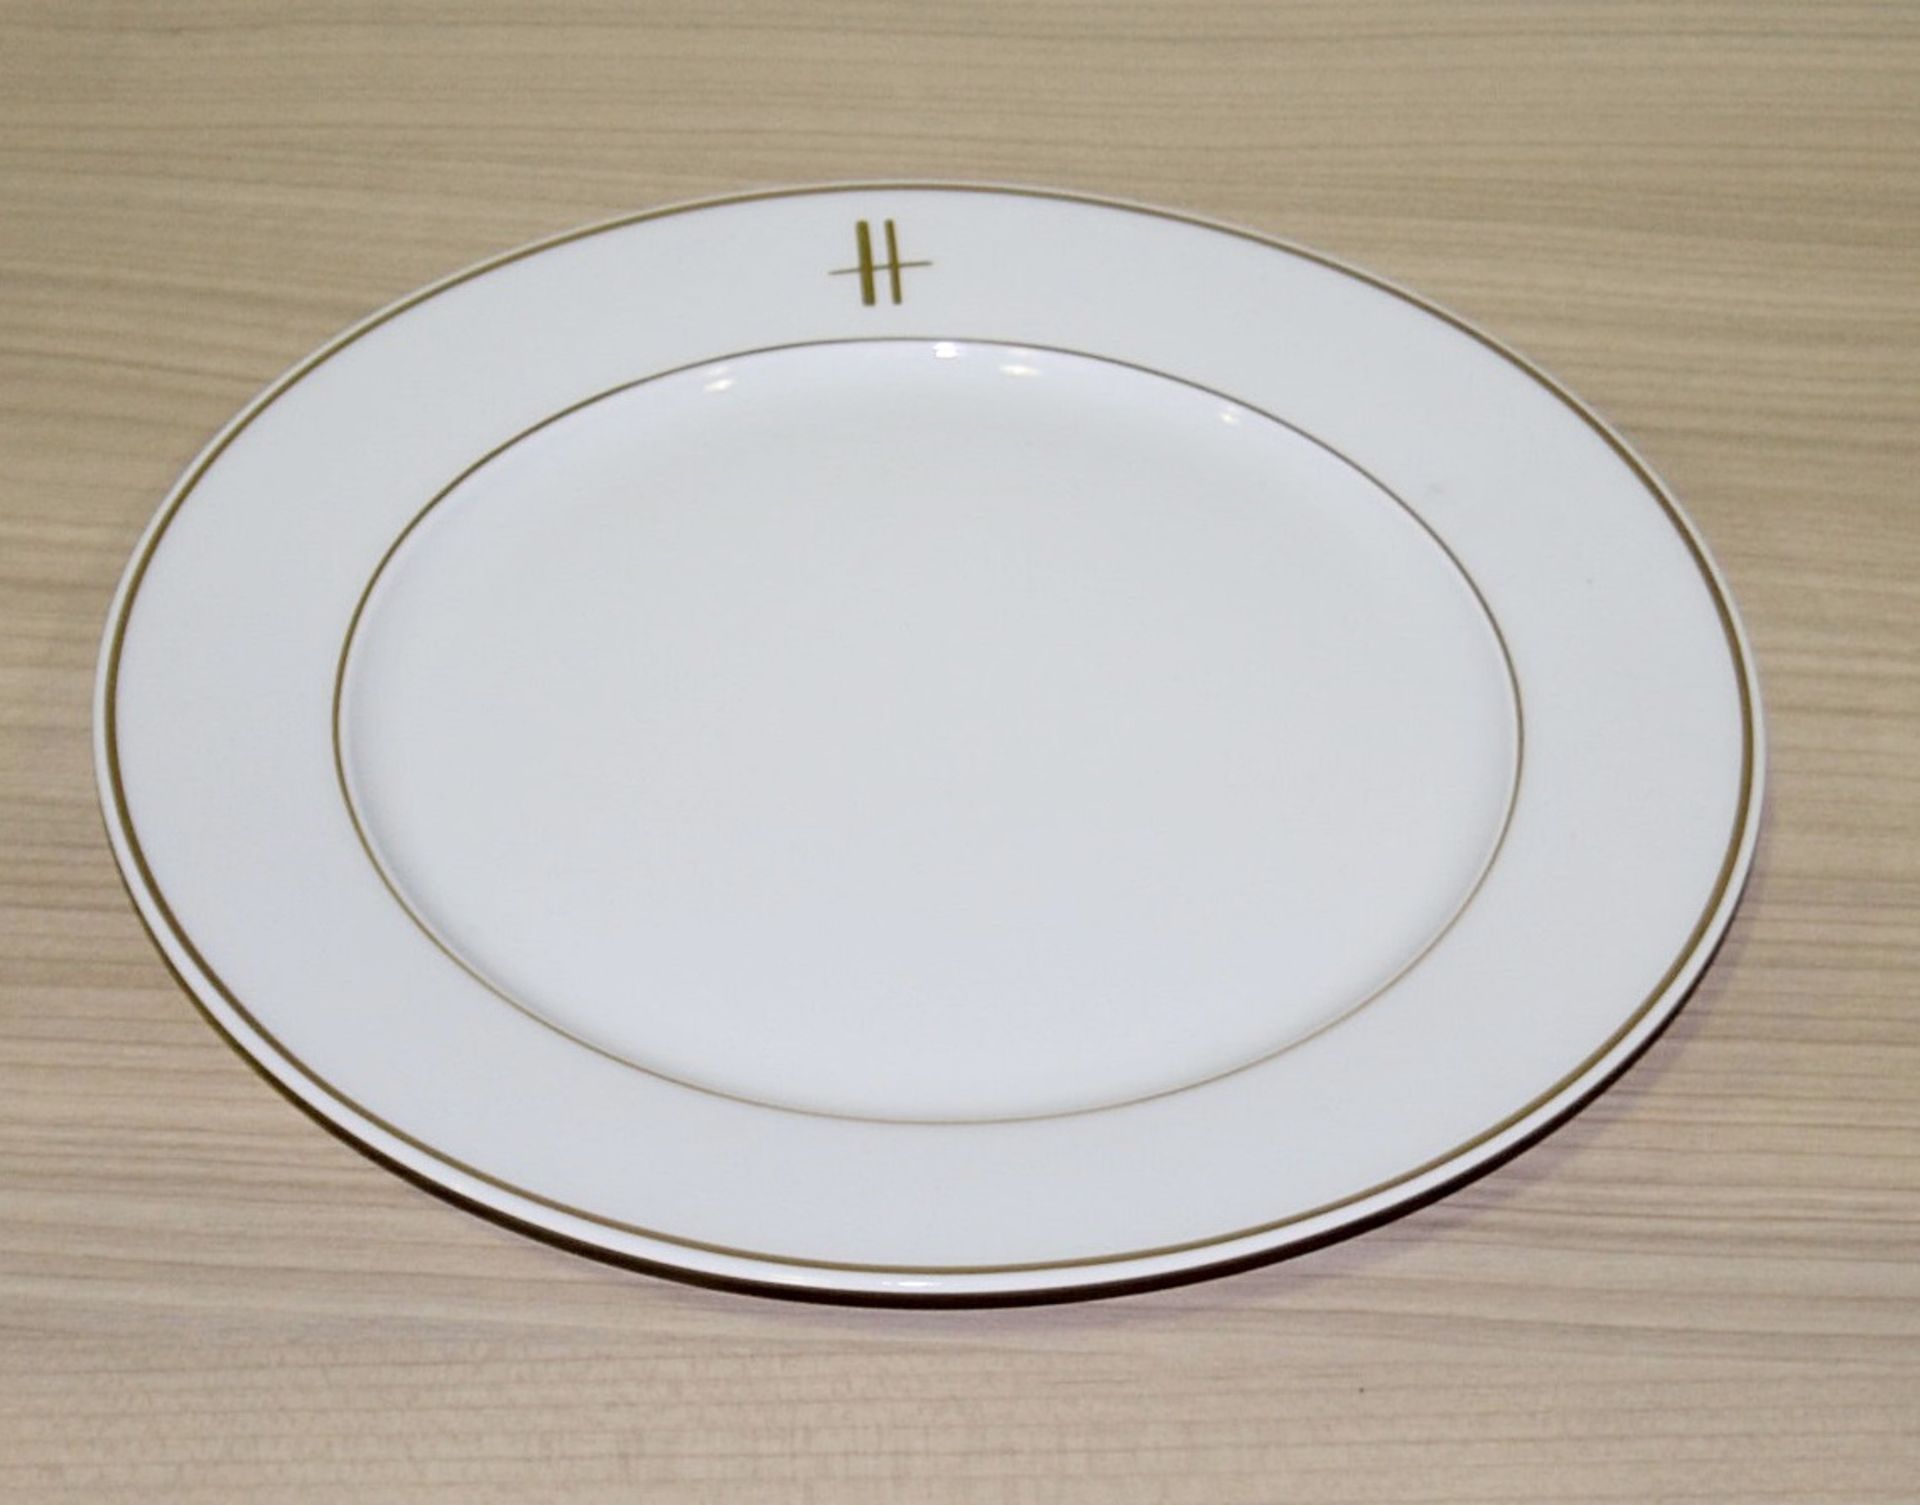 20 x PILLIVUYT Porcelain Small Dinner / Dessert Plates In White Featuring 'Famous Branding'